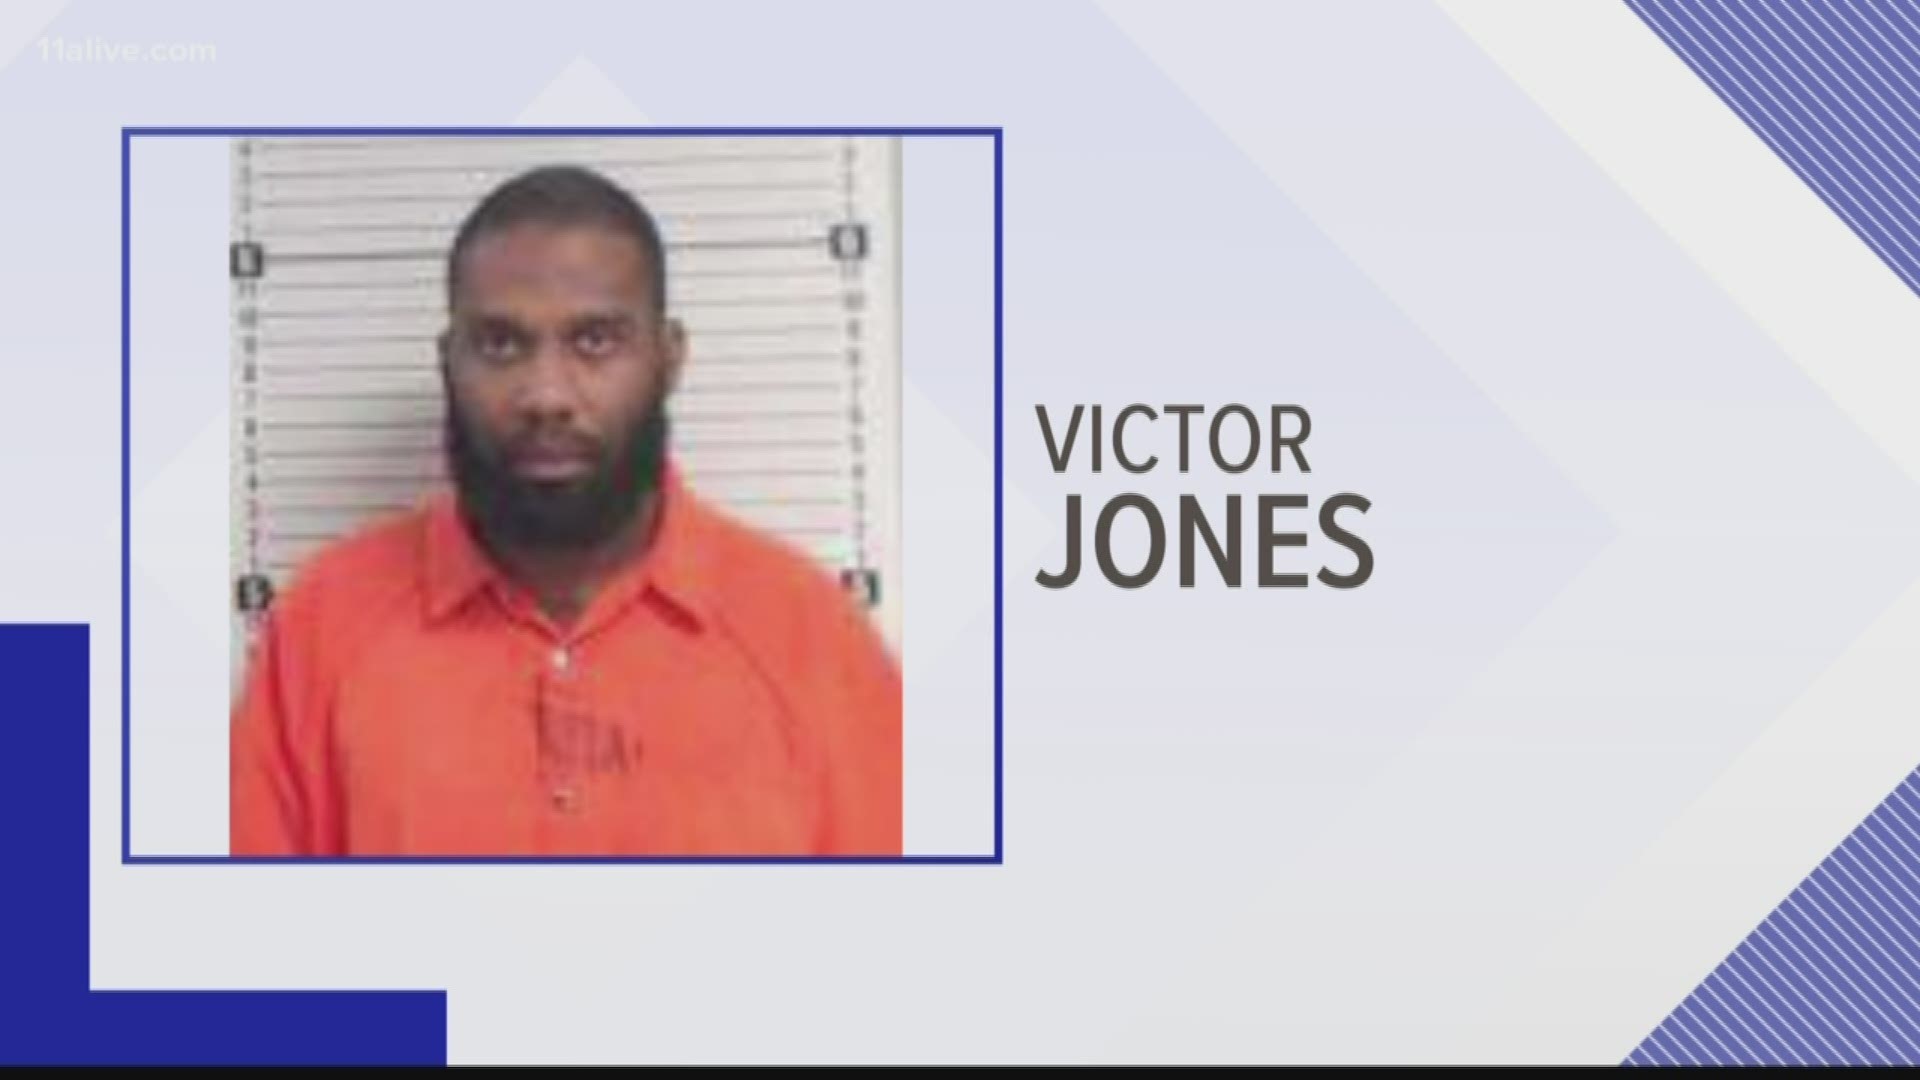 Jones was taken into custody.